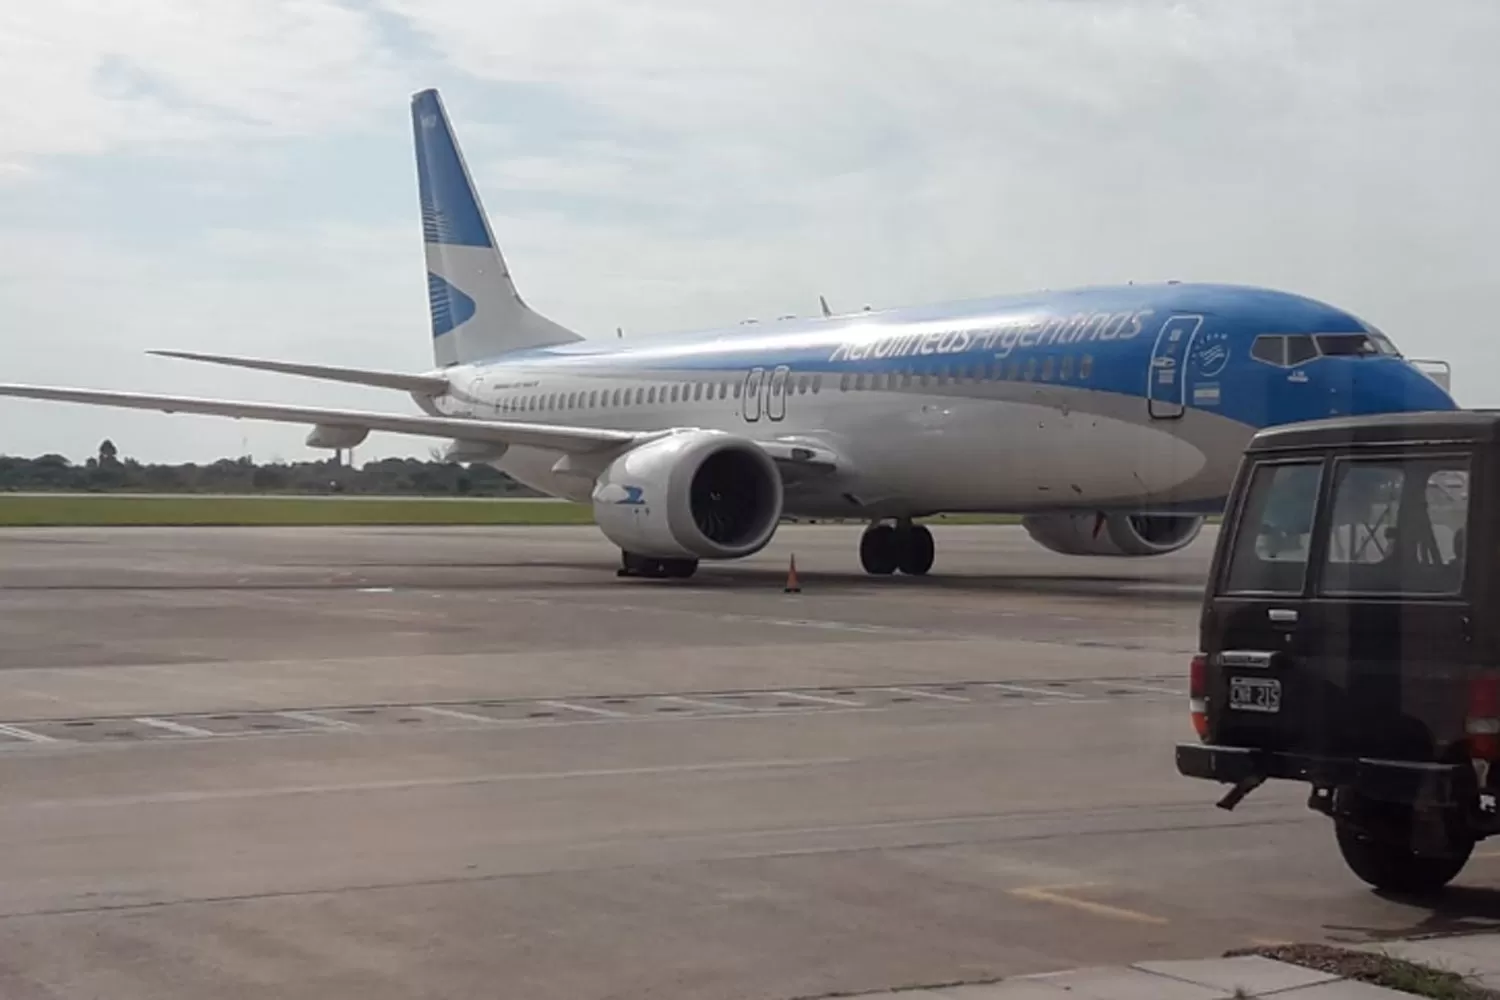 EN PISTA. La aeronave aterrizó en Tucumán alrededor de las 5.